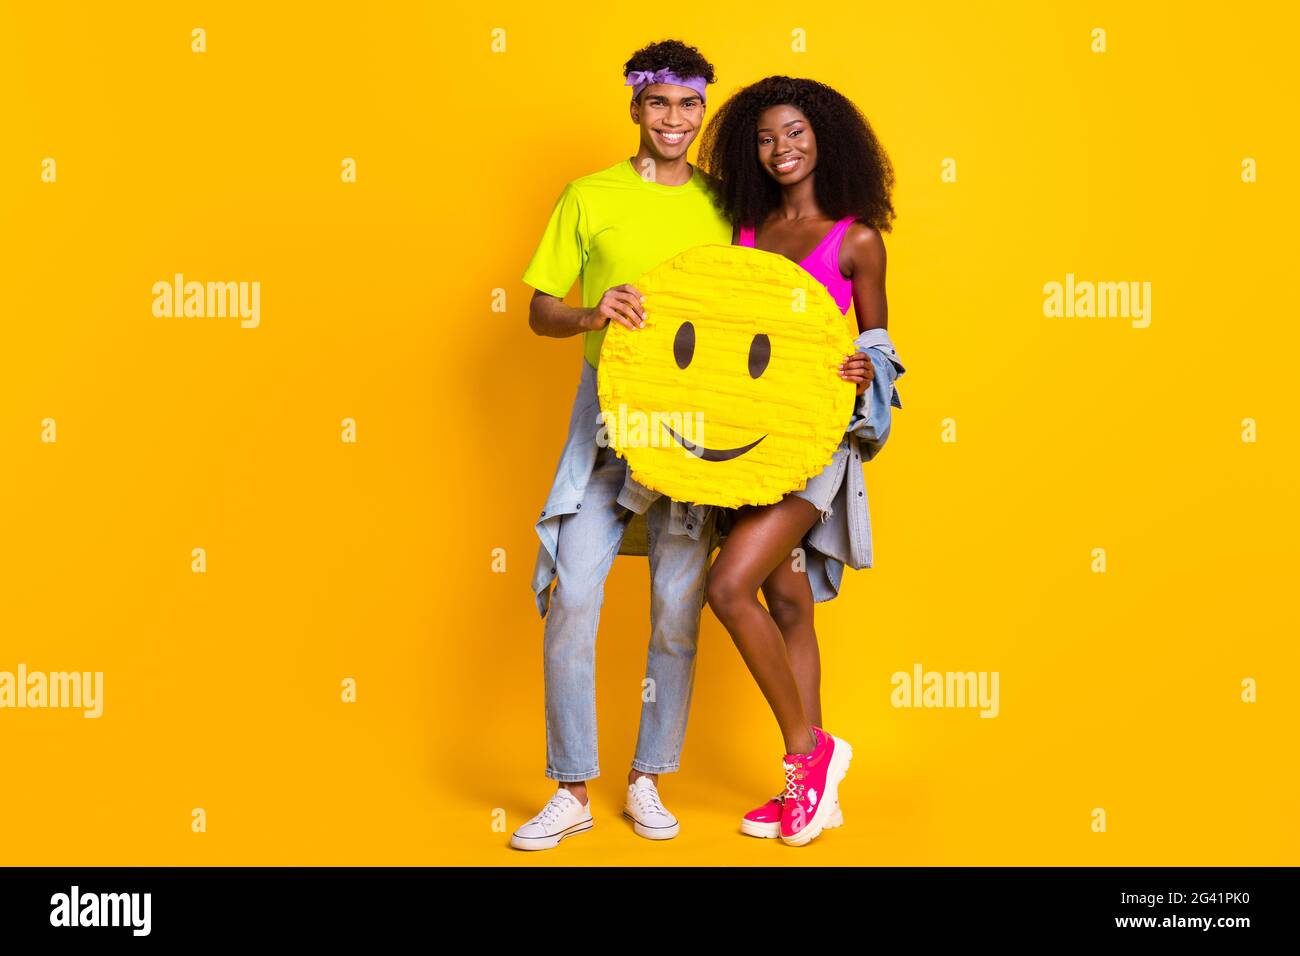 Foto von niedlichen glänzenden jungen Paar gekleidet Denim-Outfit mit riesigen Smiley-Zeichen Umarmung vereinzelte gelbe Farbe Hintergrund Stockfoto